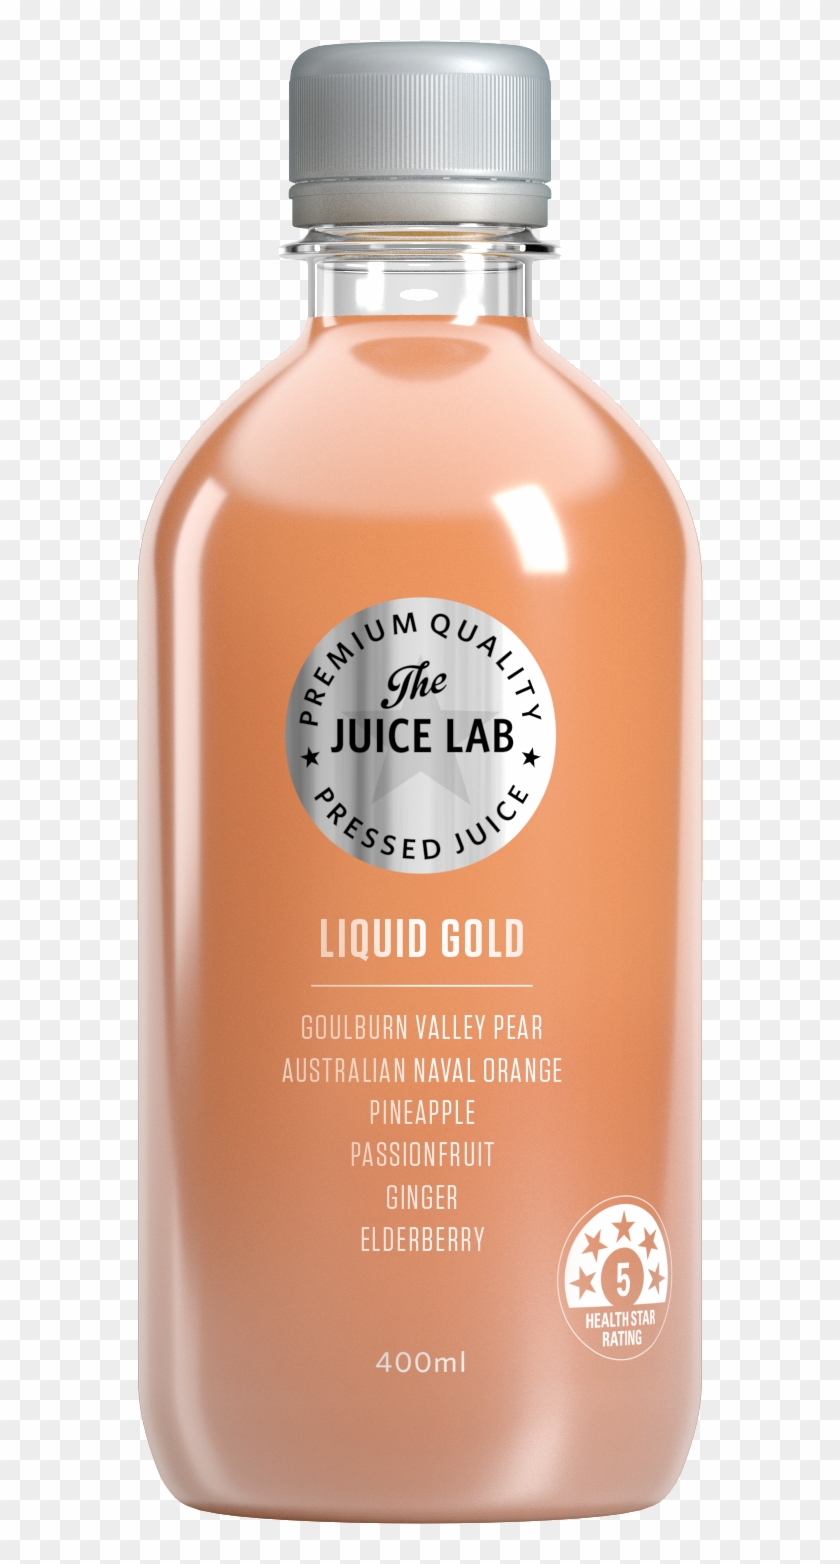 Liquid Gold Pressed Juice - Juice Lab Liquid Gold Clipart #3655634